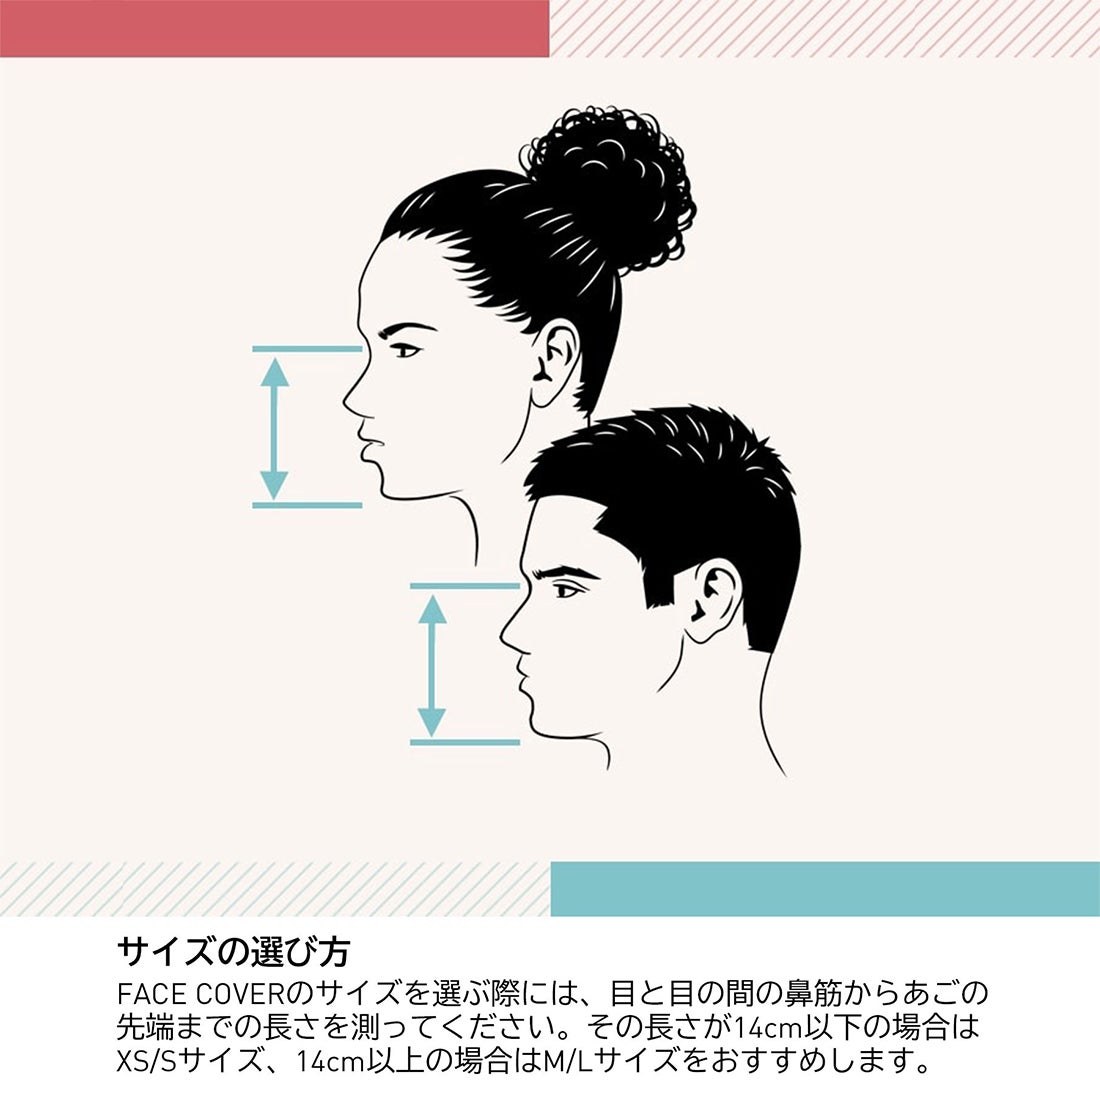 フェイスカバー3枚組 Face covers 3-Pack 【返品不可商品】 -Reebok 公式オンラインショップ